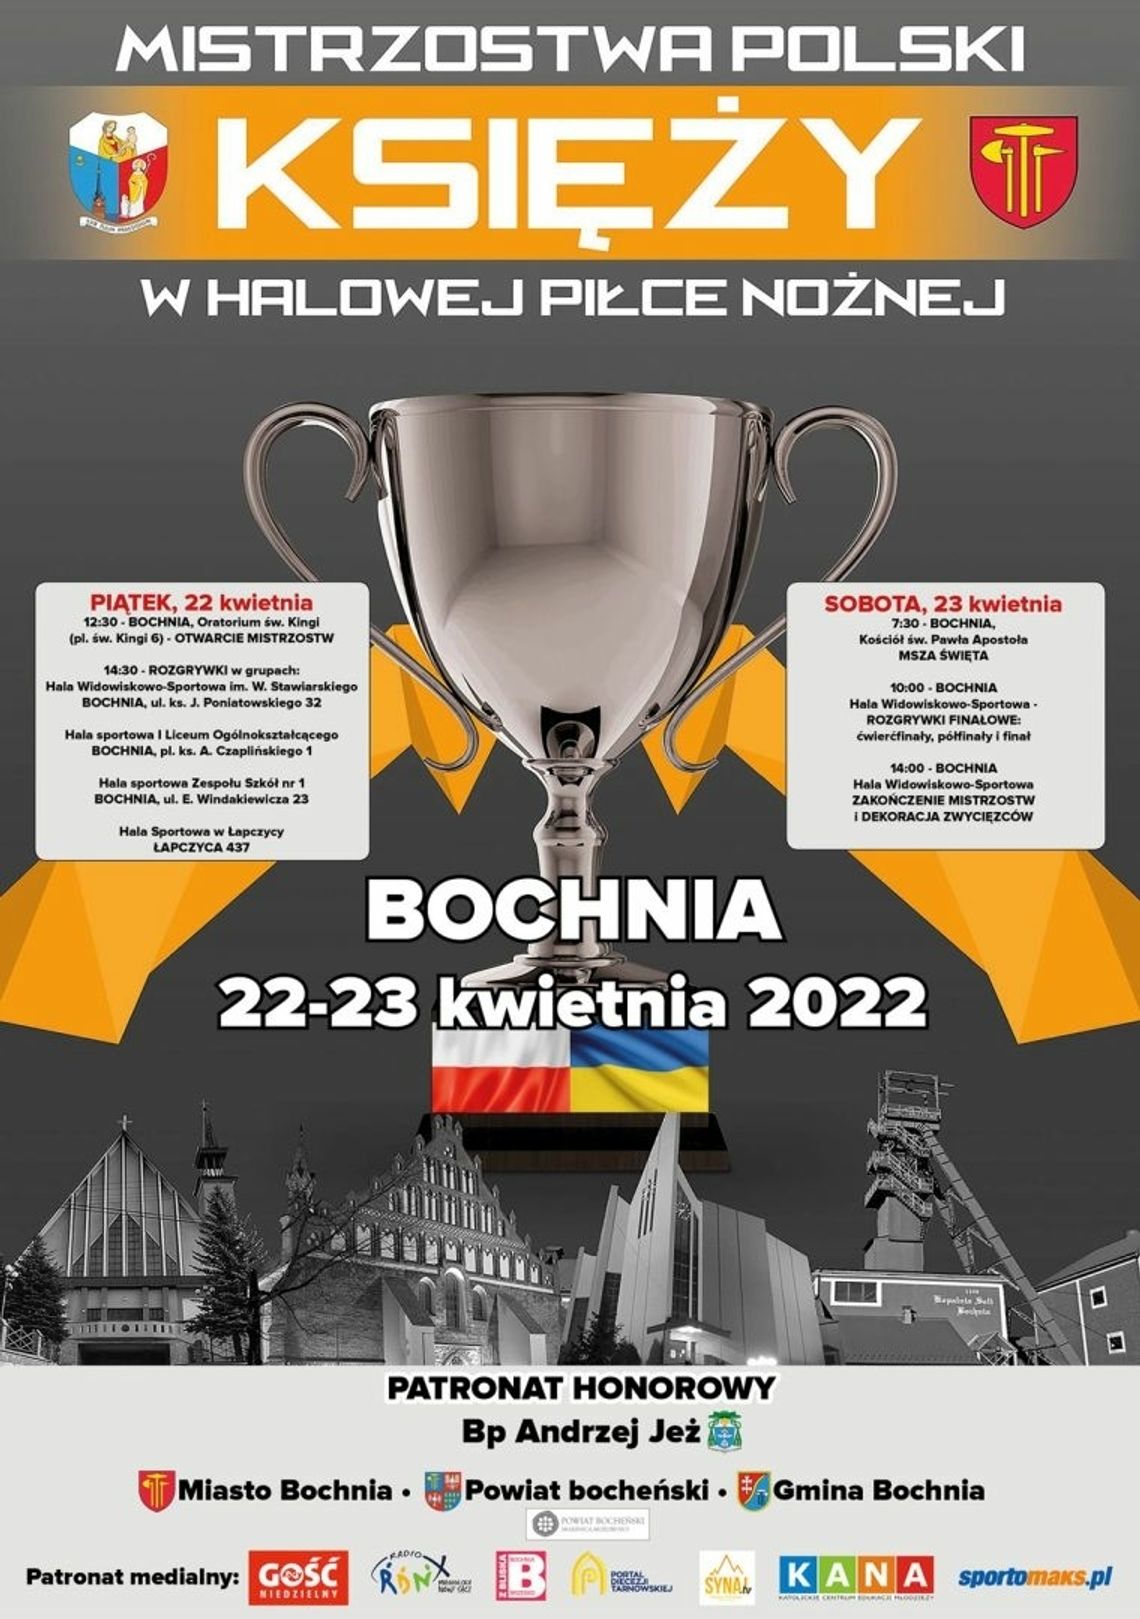  XVI Mistrzostwa Polski Księży w Halowej Piłce Nożnej